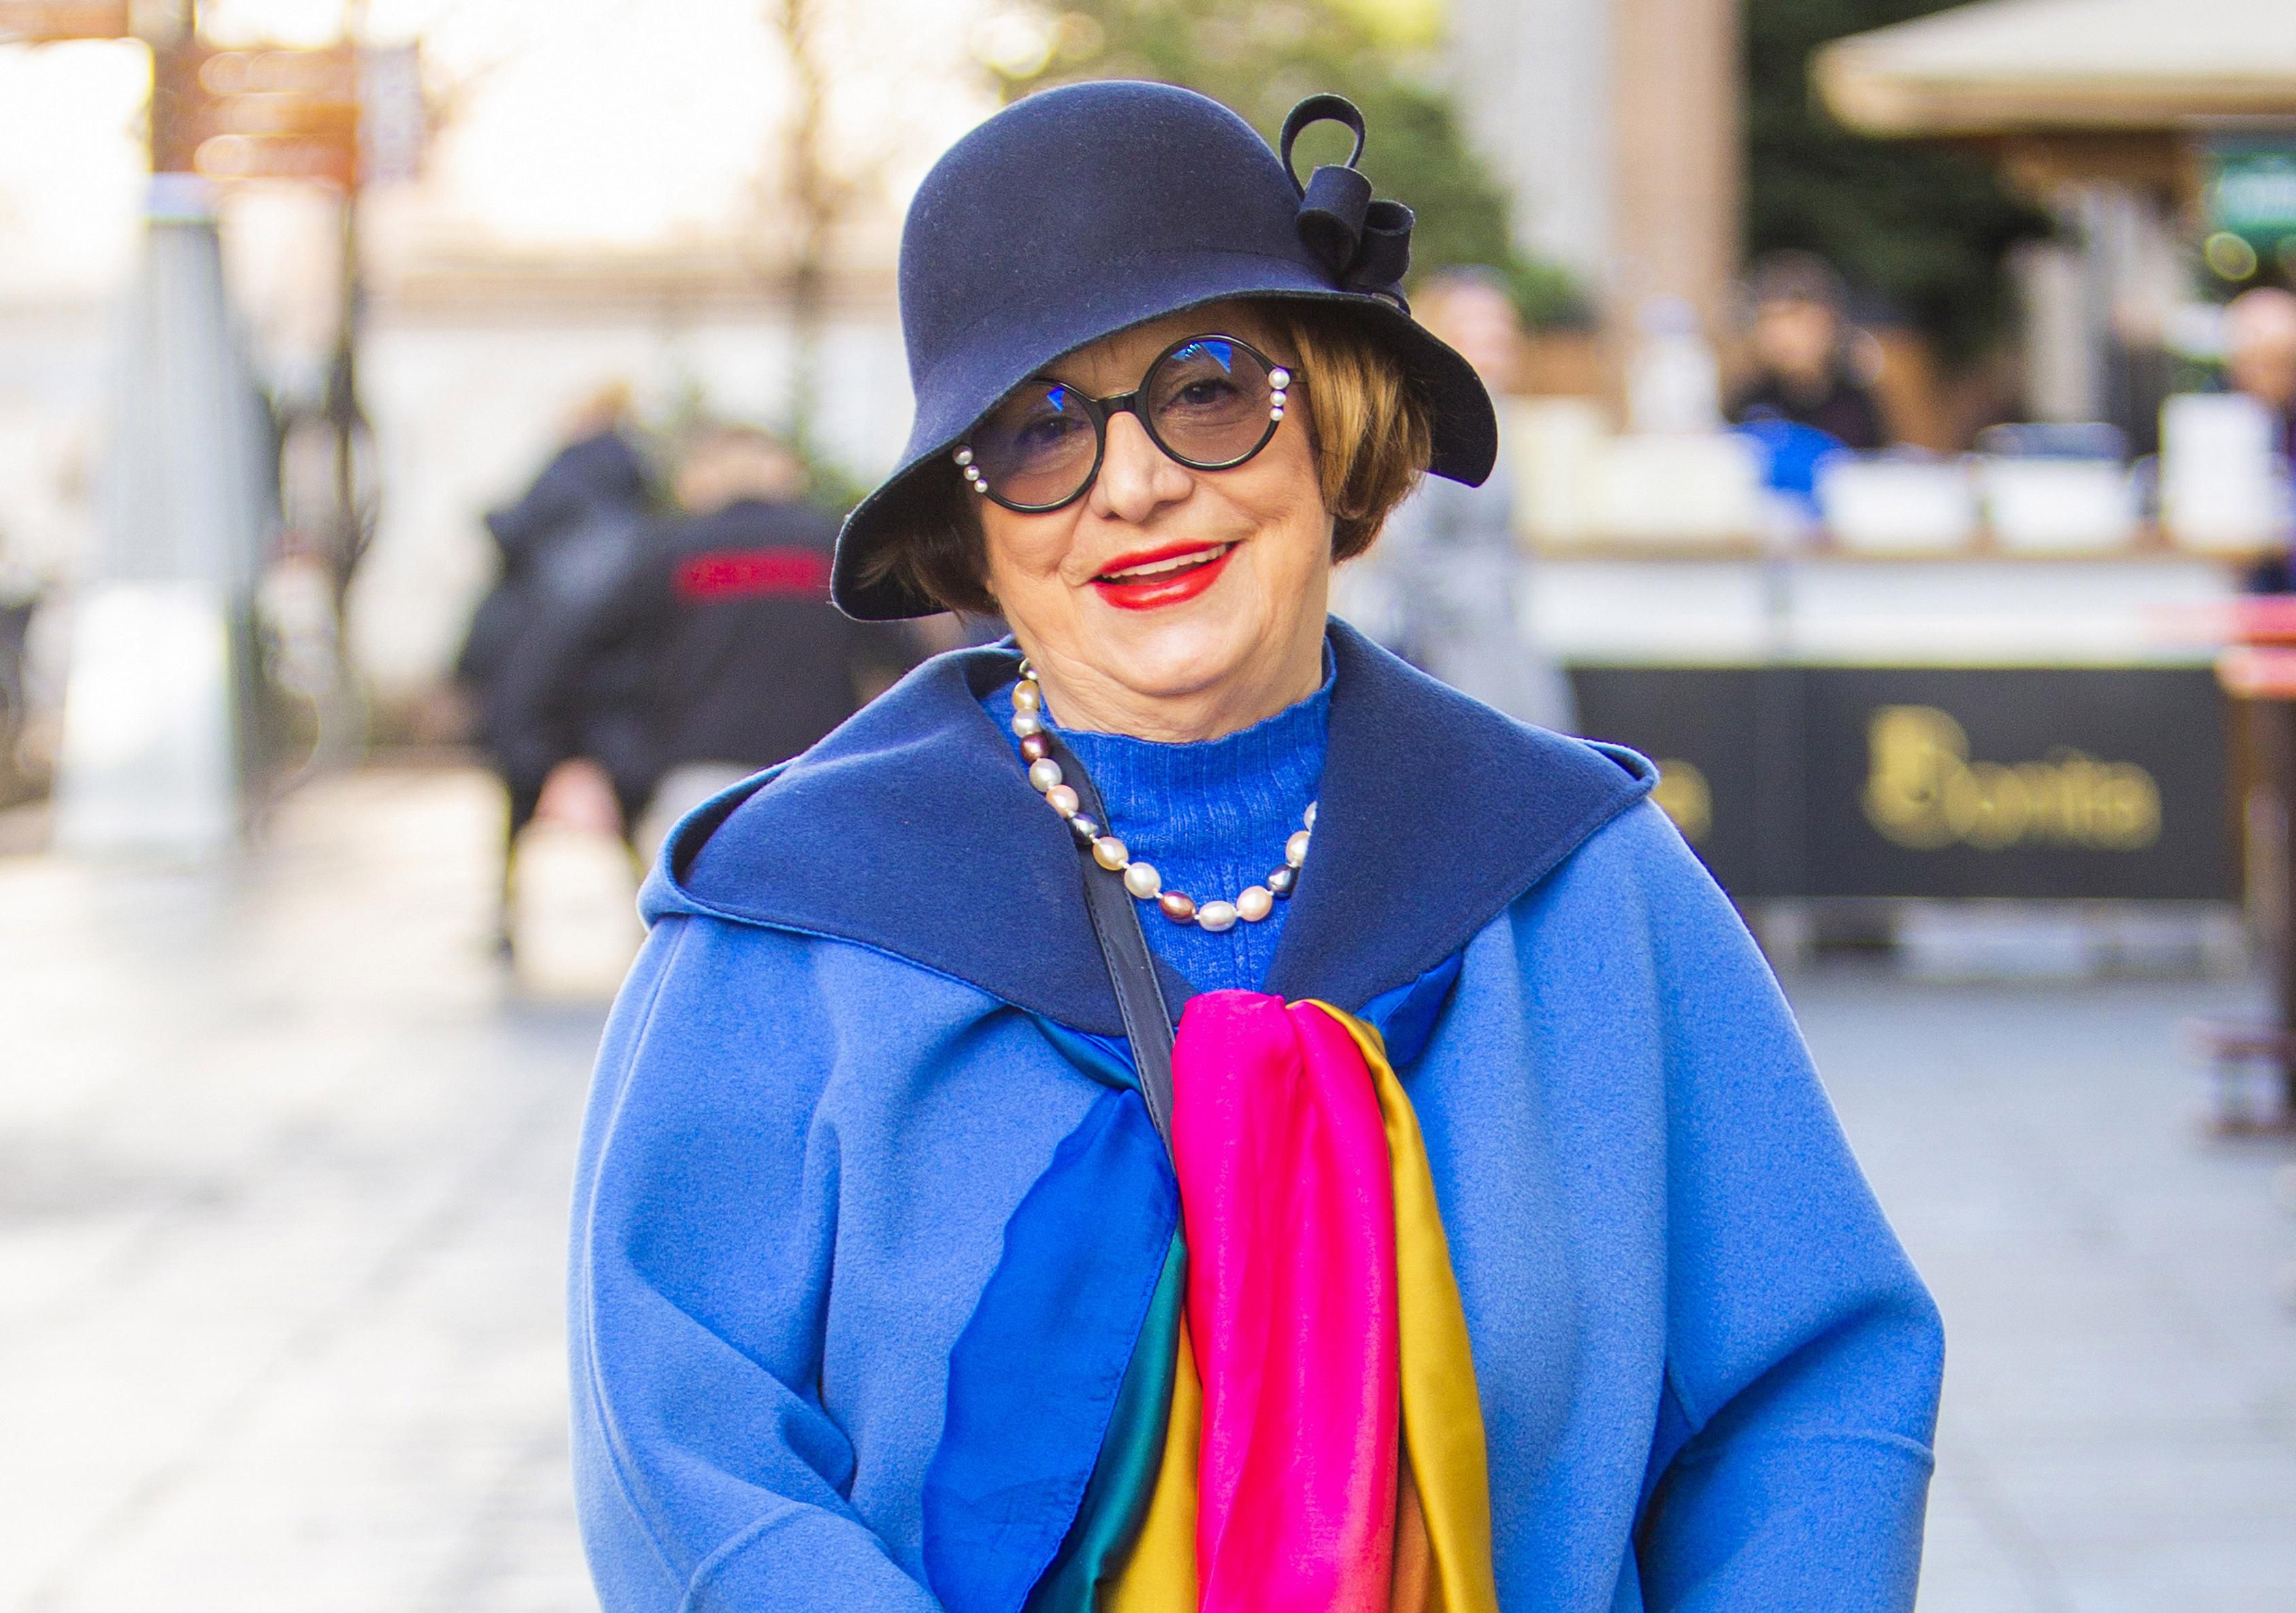 Umirovljena pravnica Višnja uvijek nas oduševi svojim stilom: 'Žive boje sam odjenula jer se dobro osjećam i jer su sretni dani'